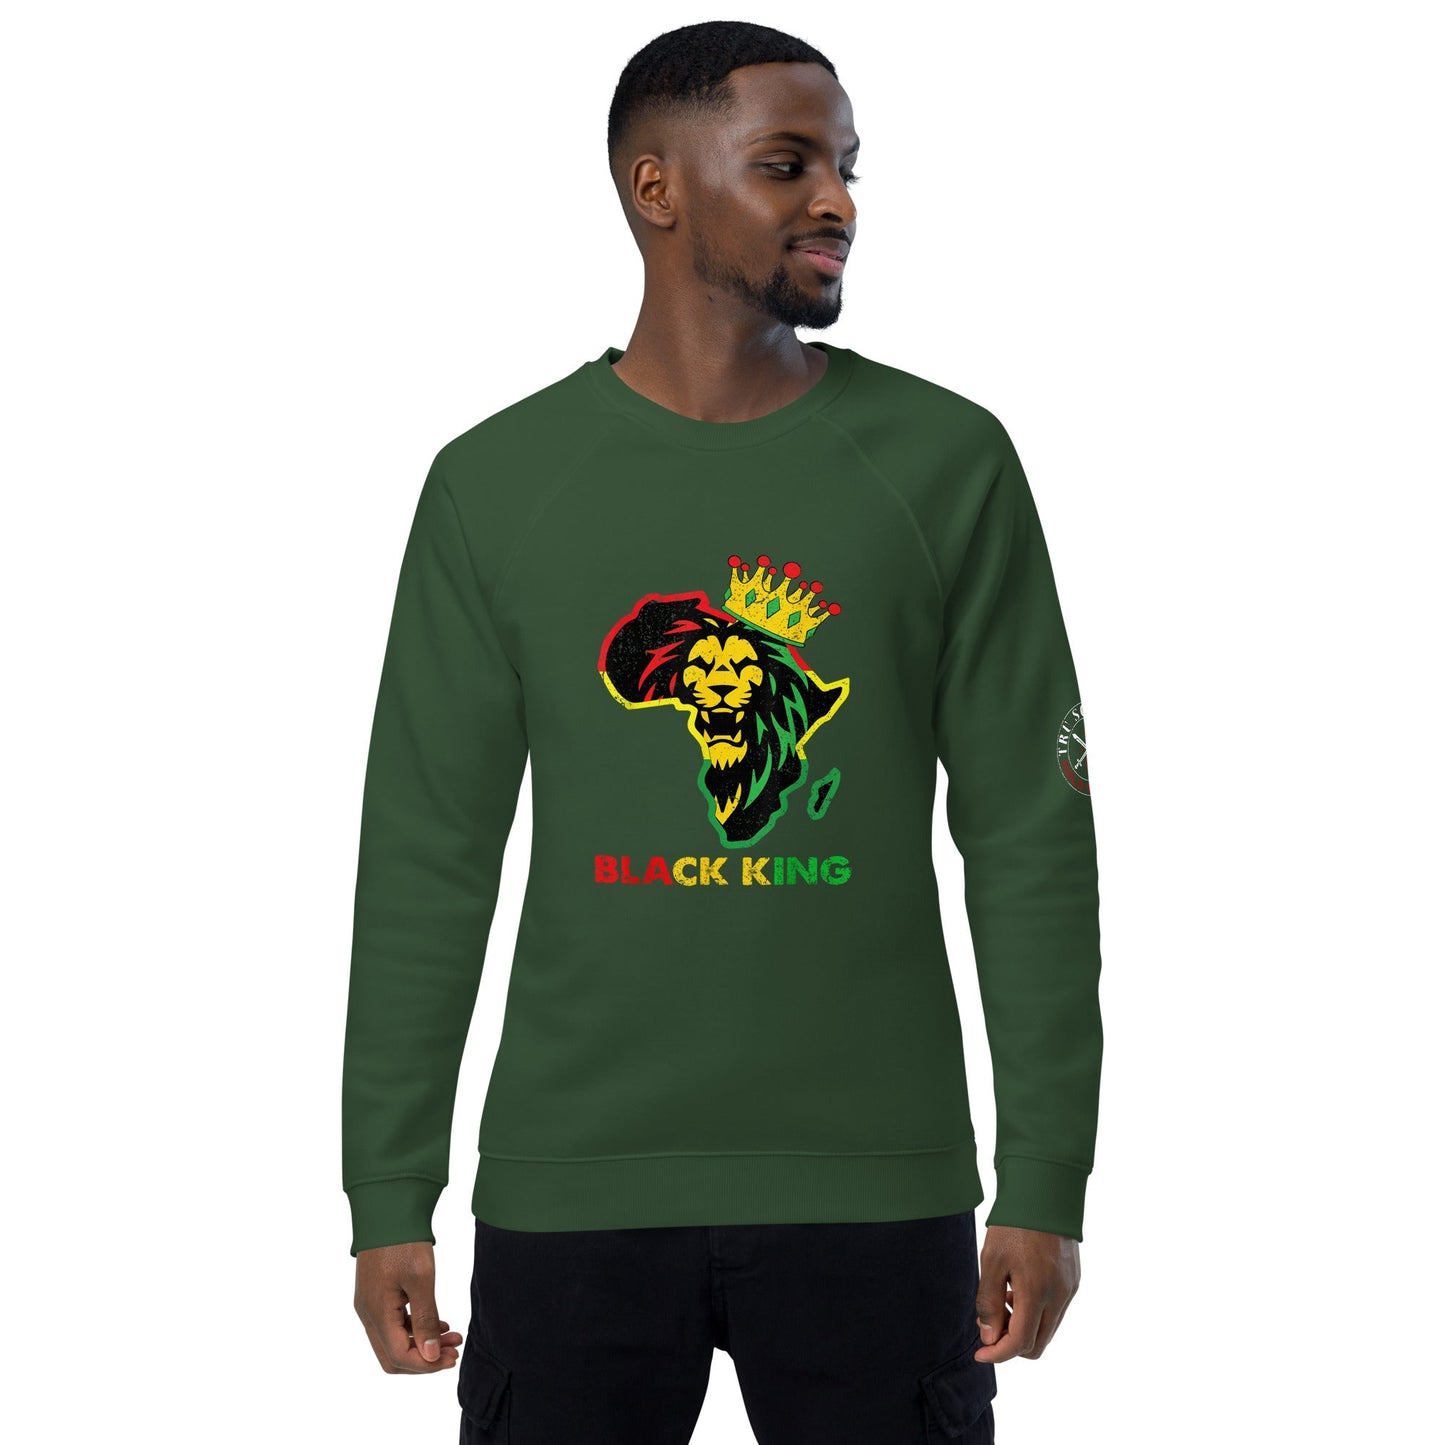 Tru Soldier Sportswear  Bottle green / XS Black King organic raglan sweatshirt